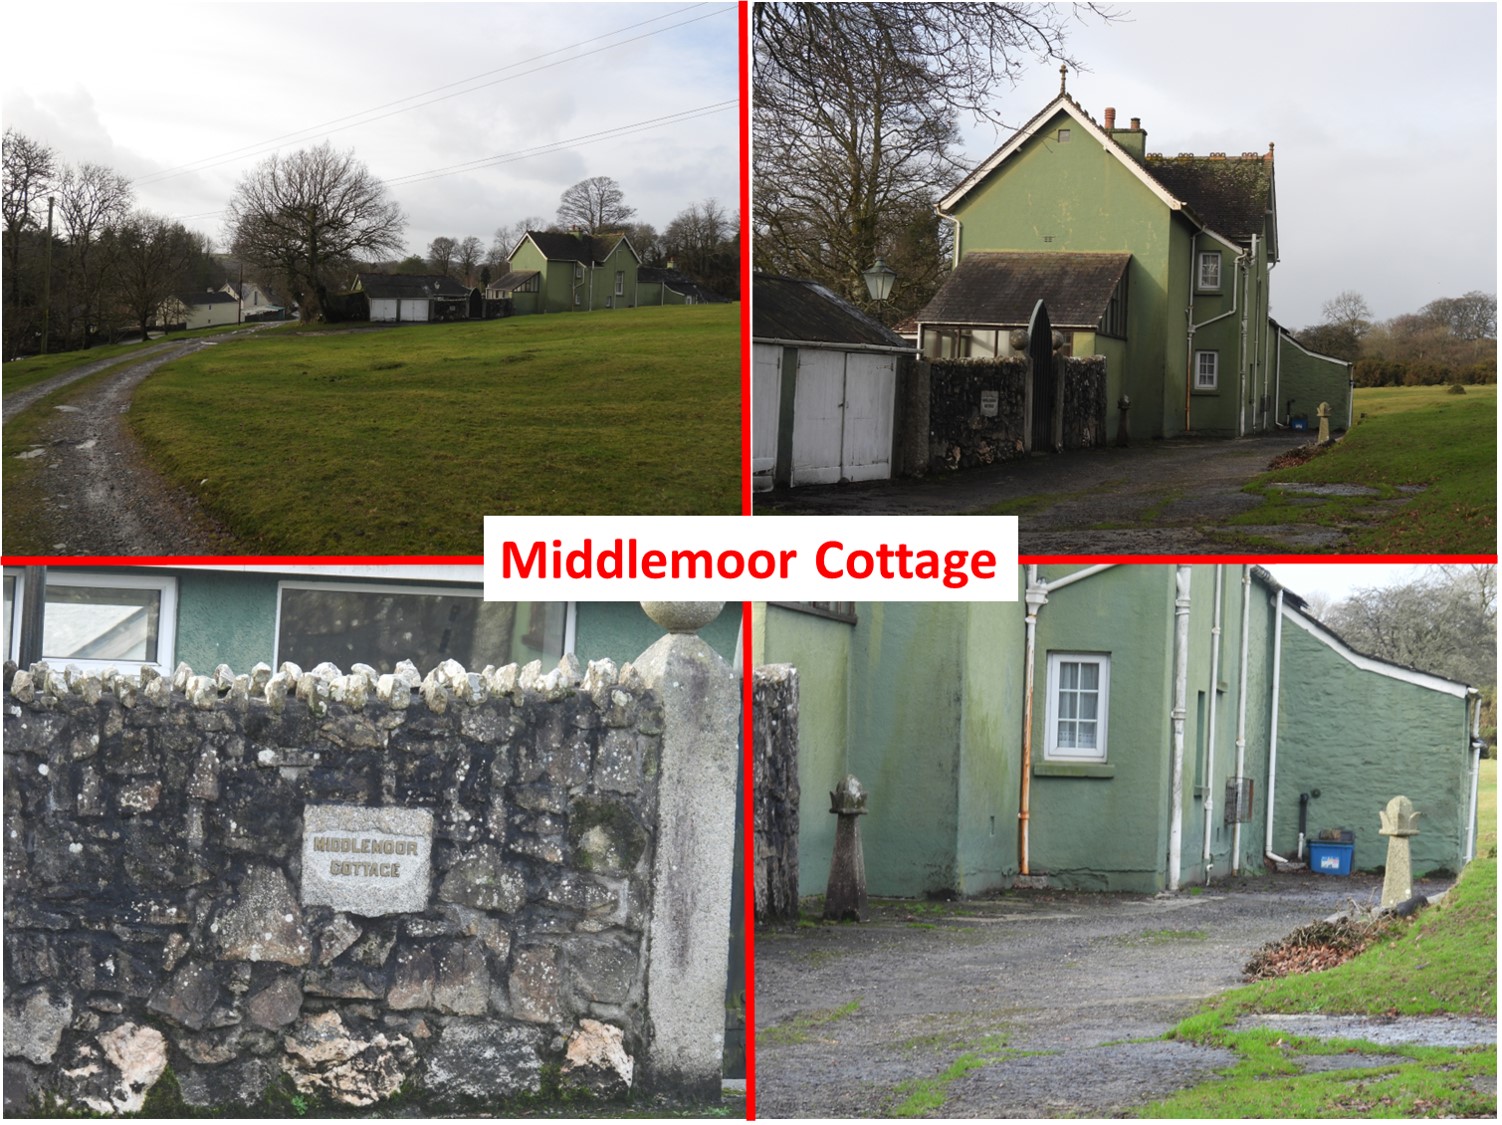 16. Middlemoor Cottage